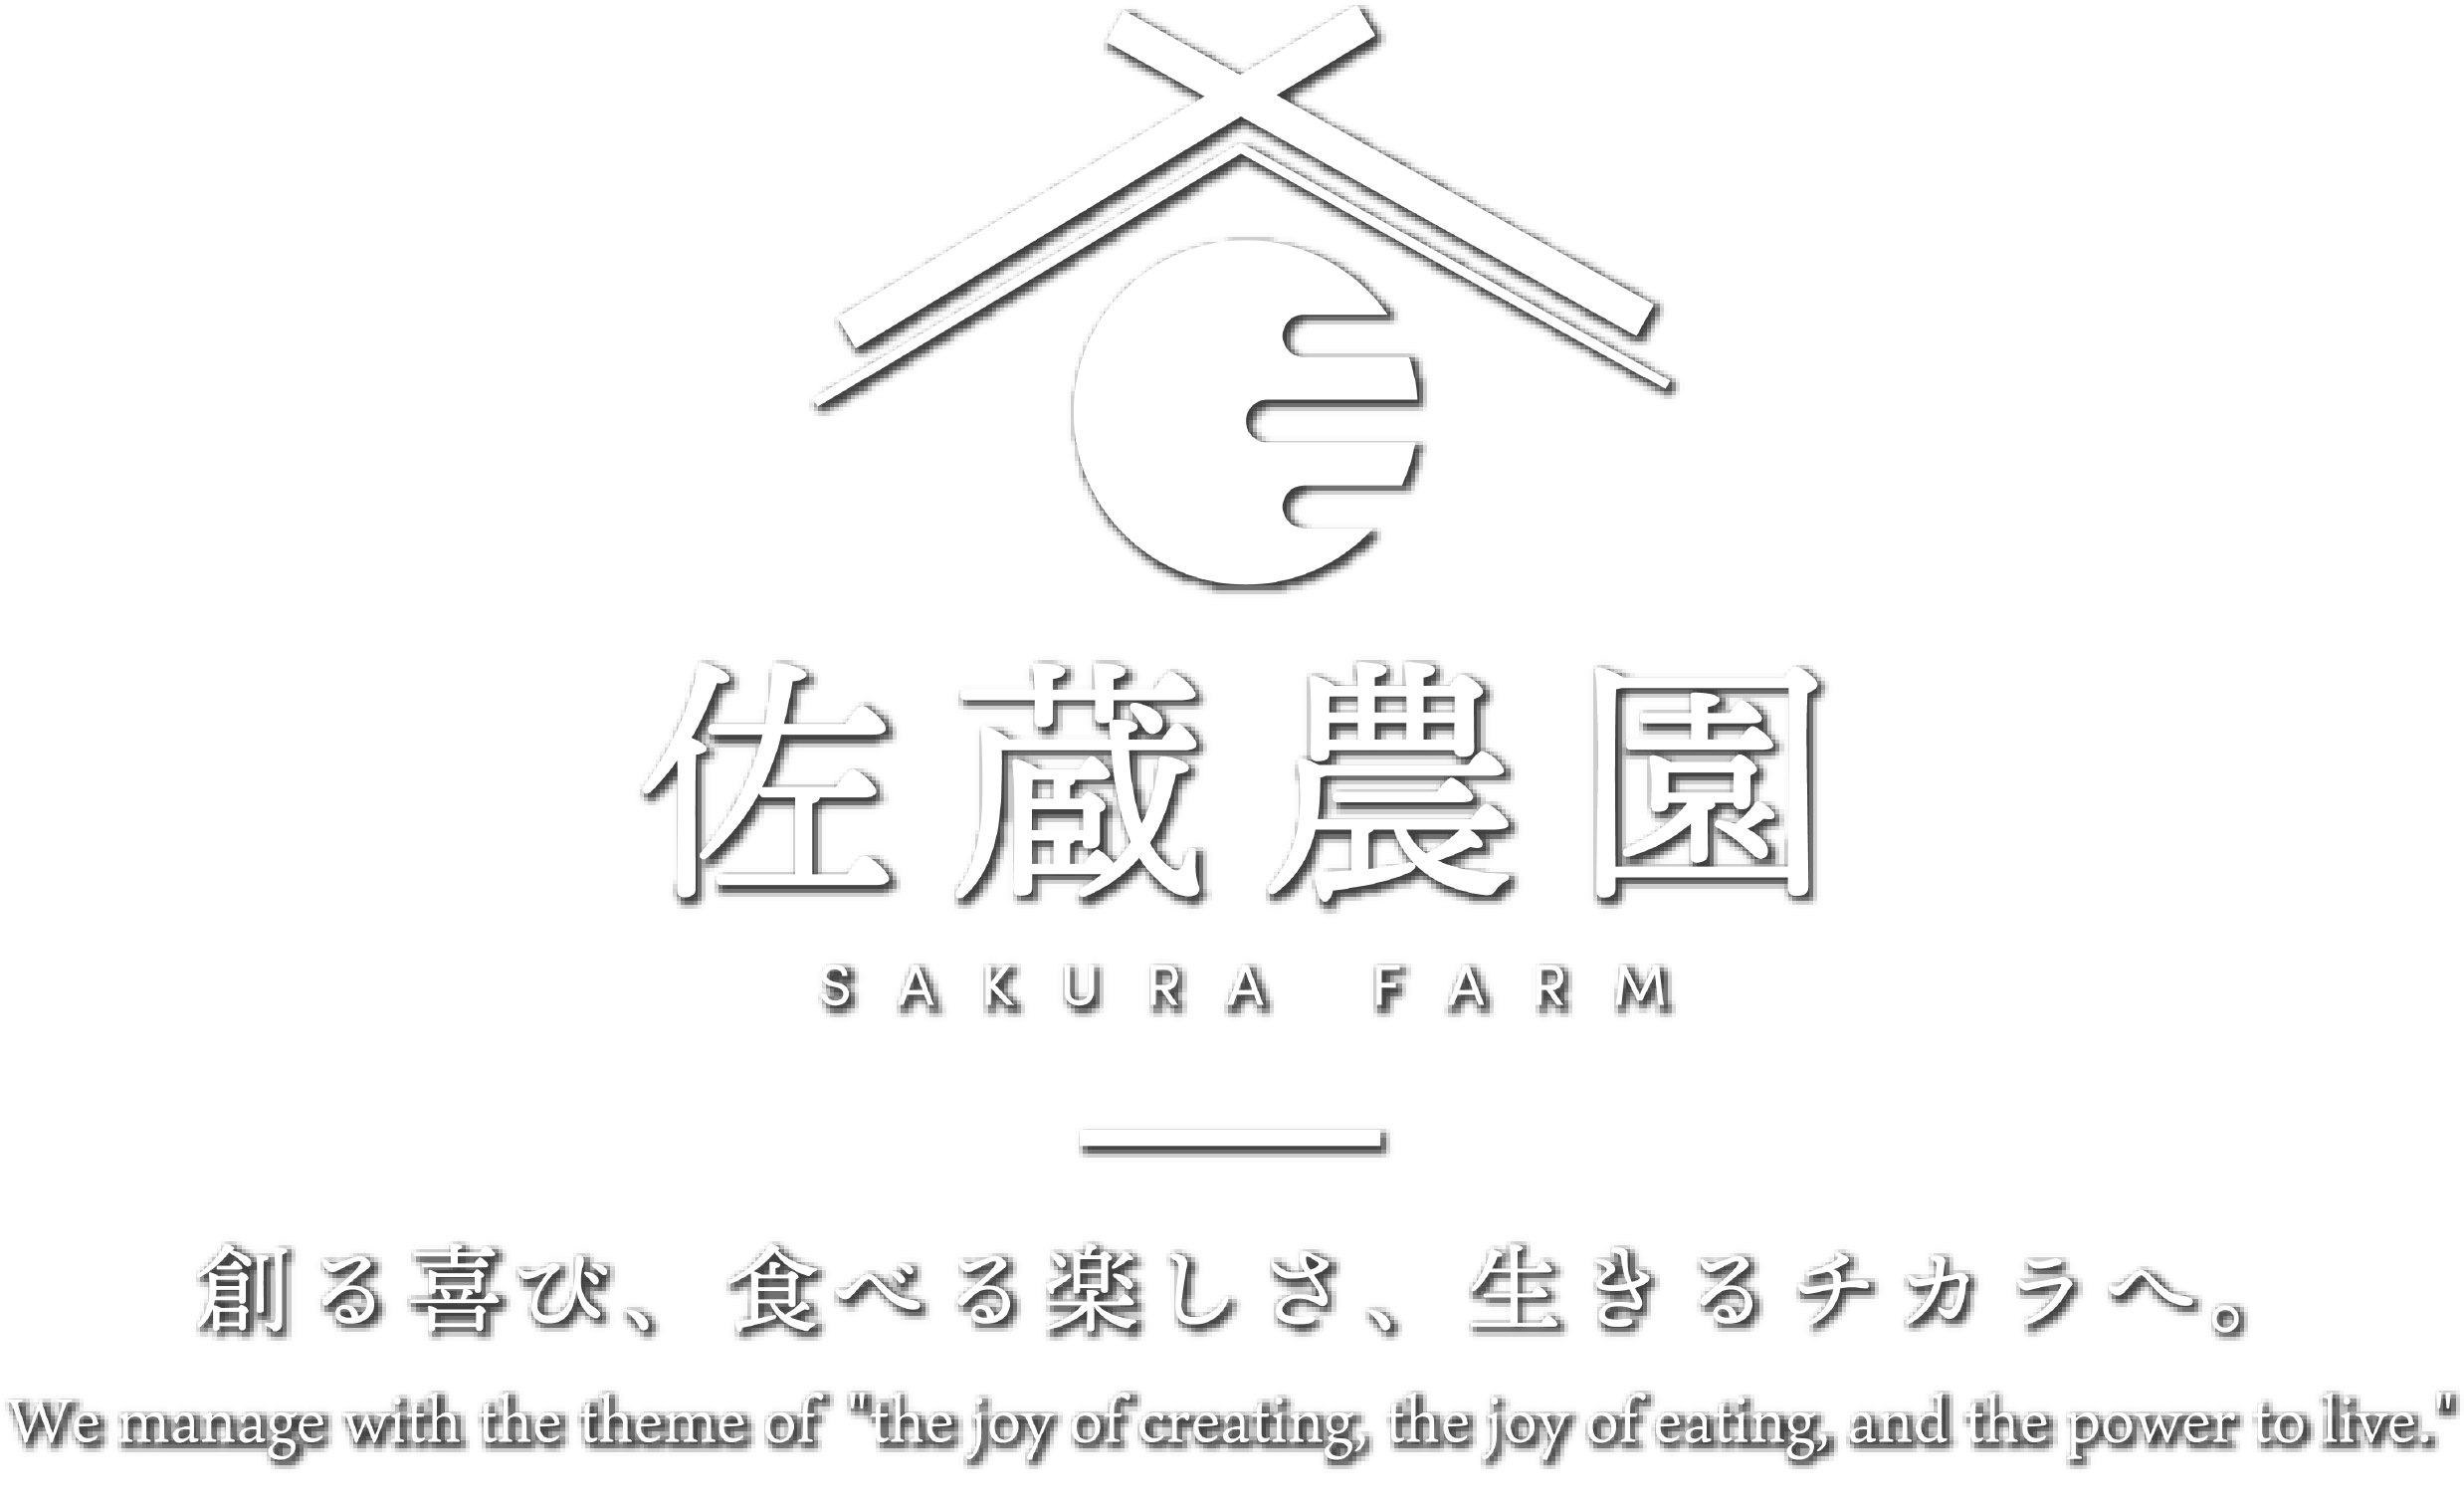 農業から6次化、そして地域創生を目指す  |株式会社佐蔵農園 (sakurafarm)福島県福島市